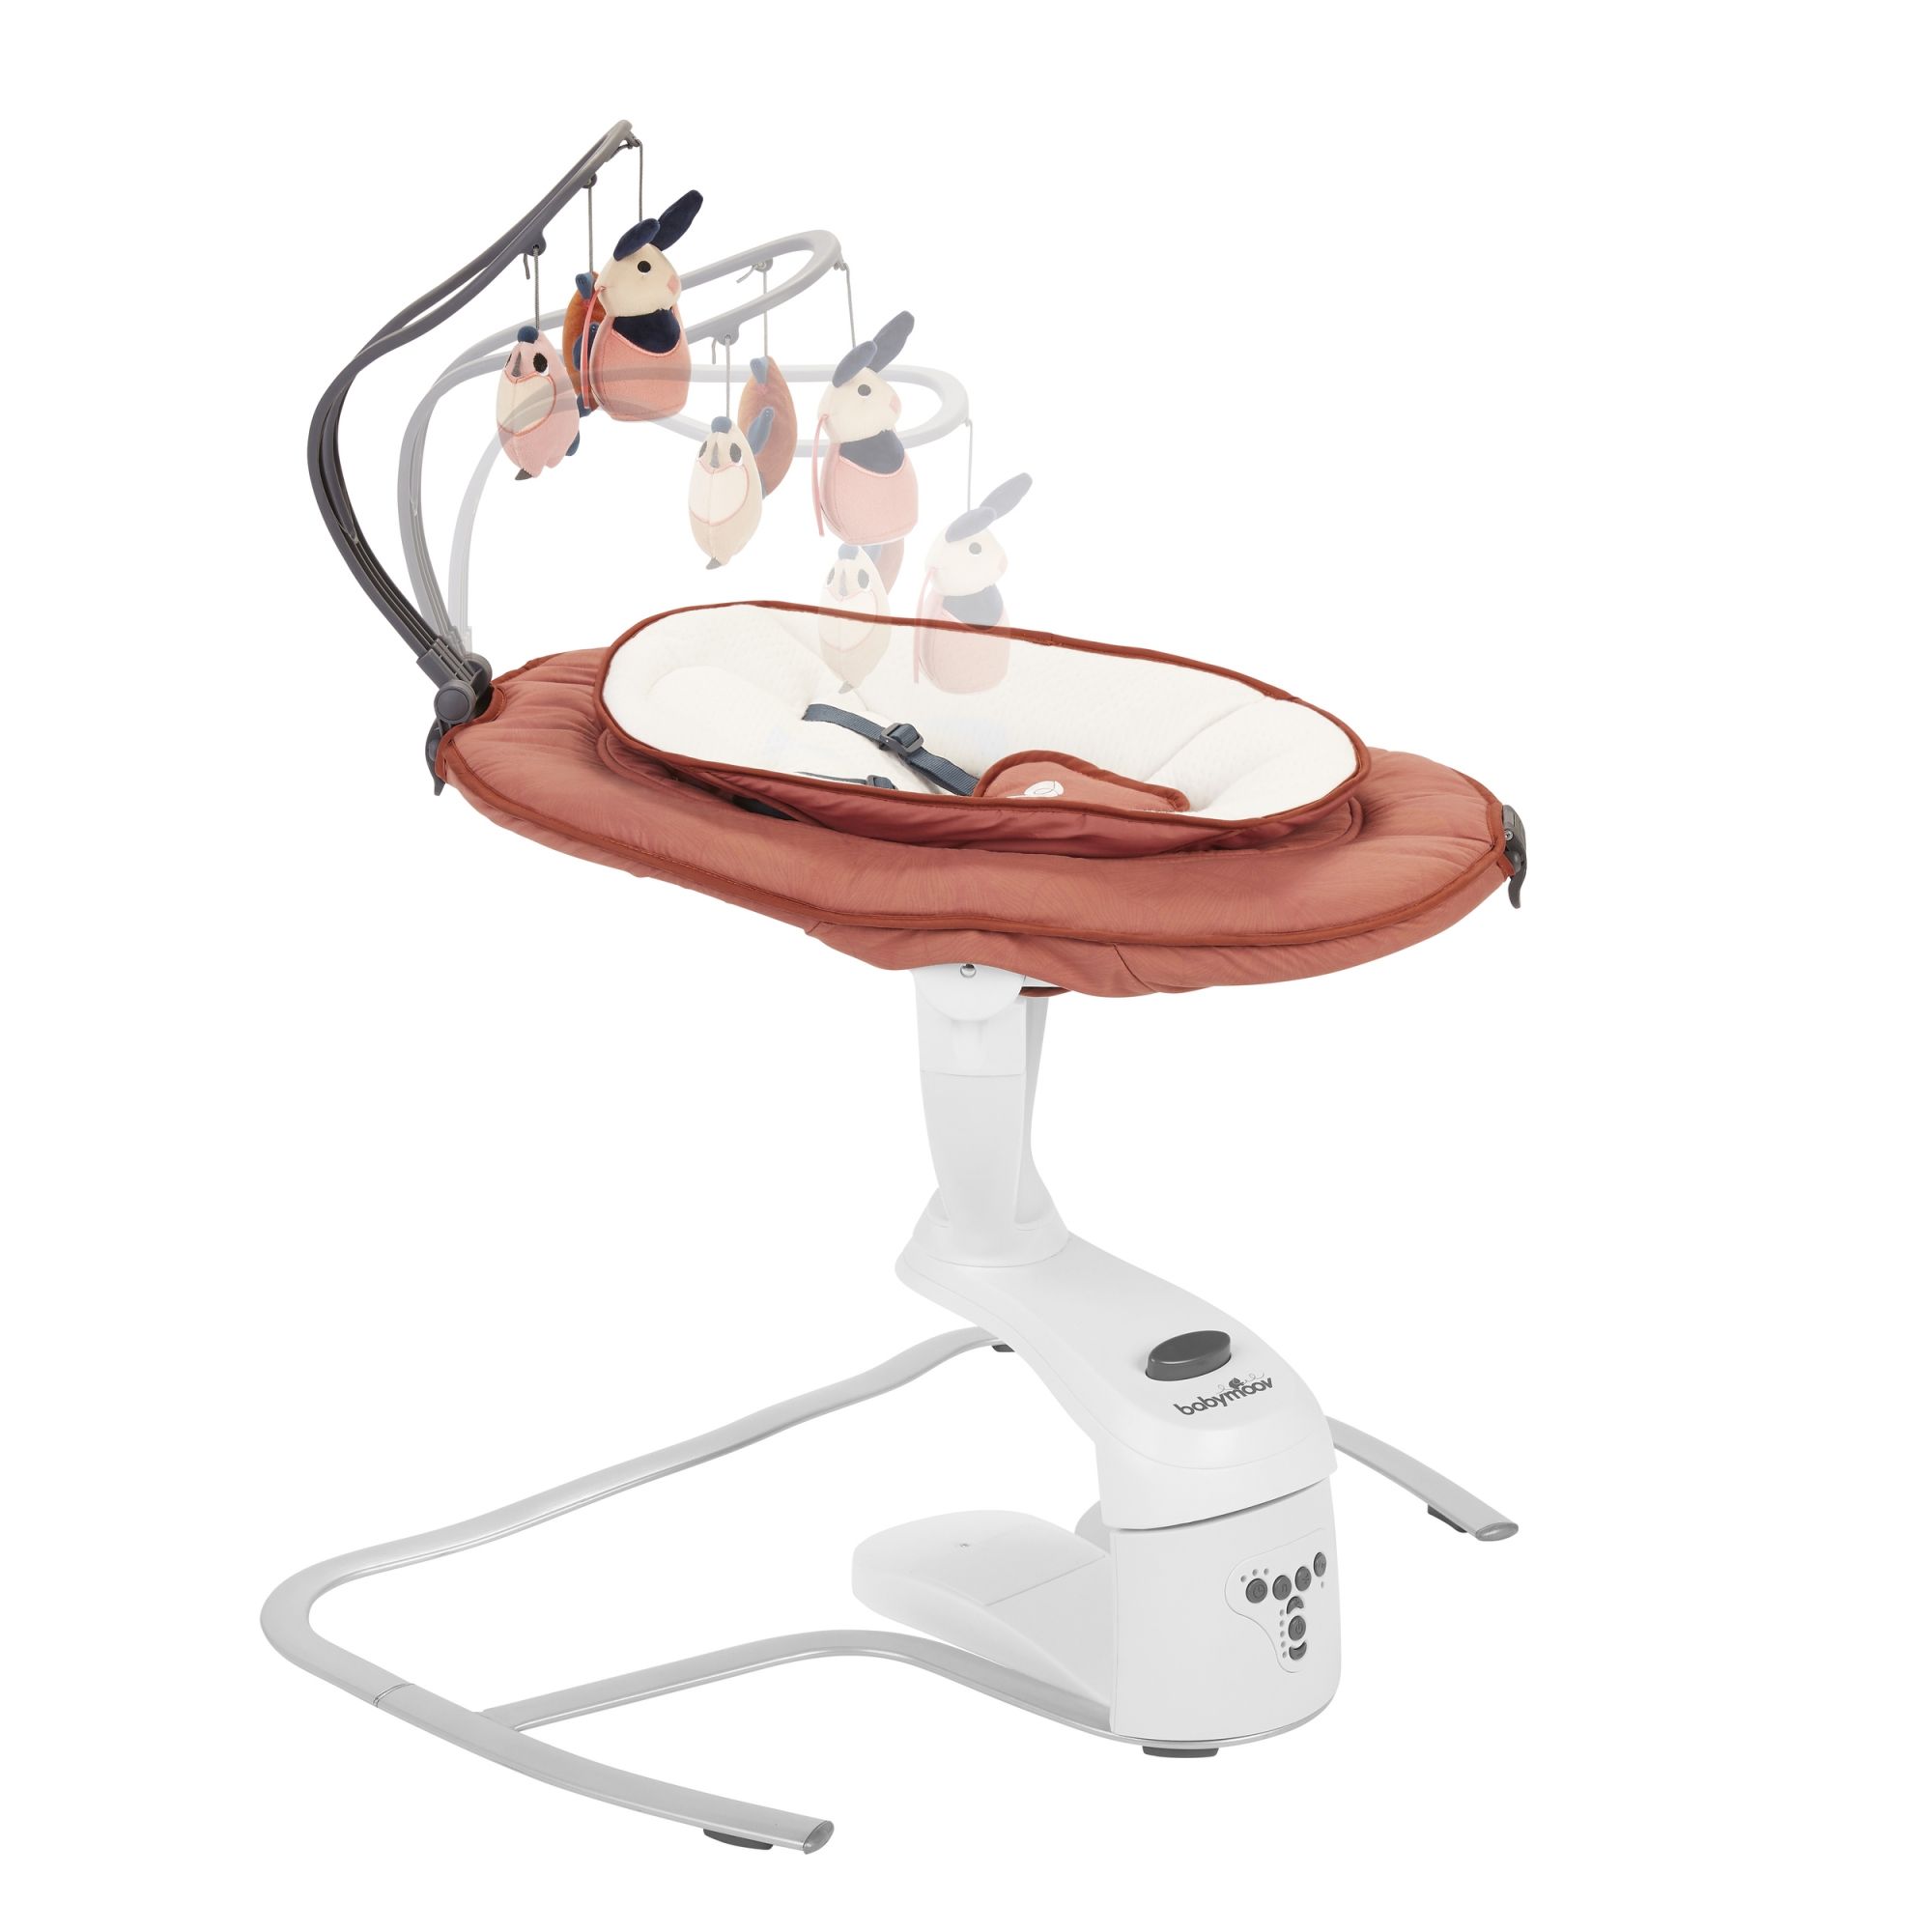 Babymoov Balancelle bébé électrique Swoon Motion, Assise a 360°, Terracotta